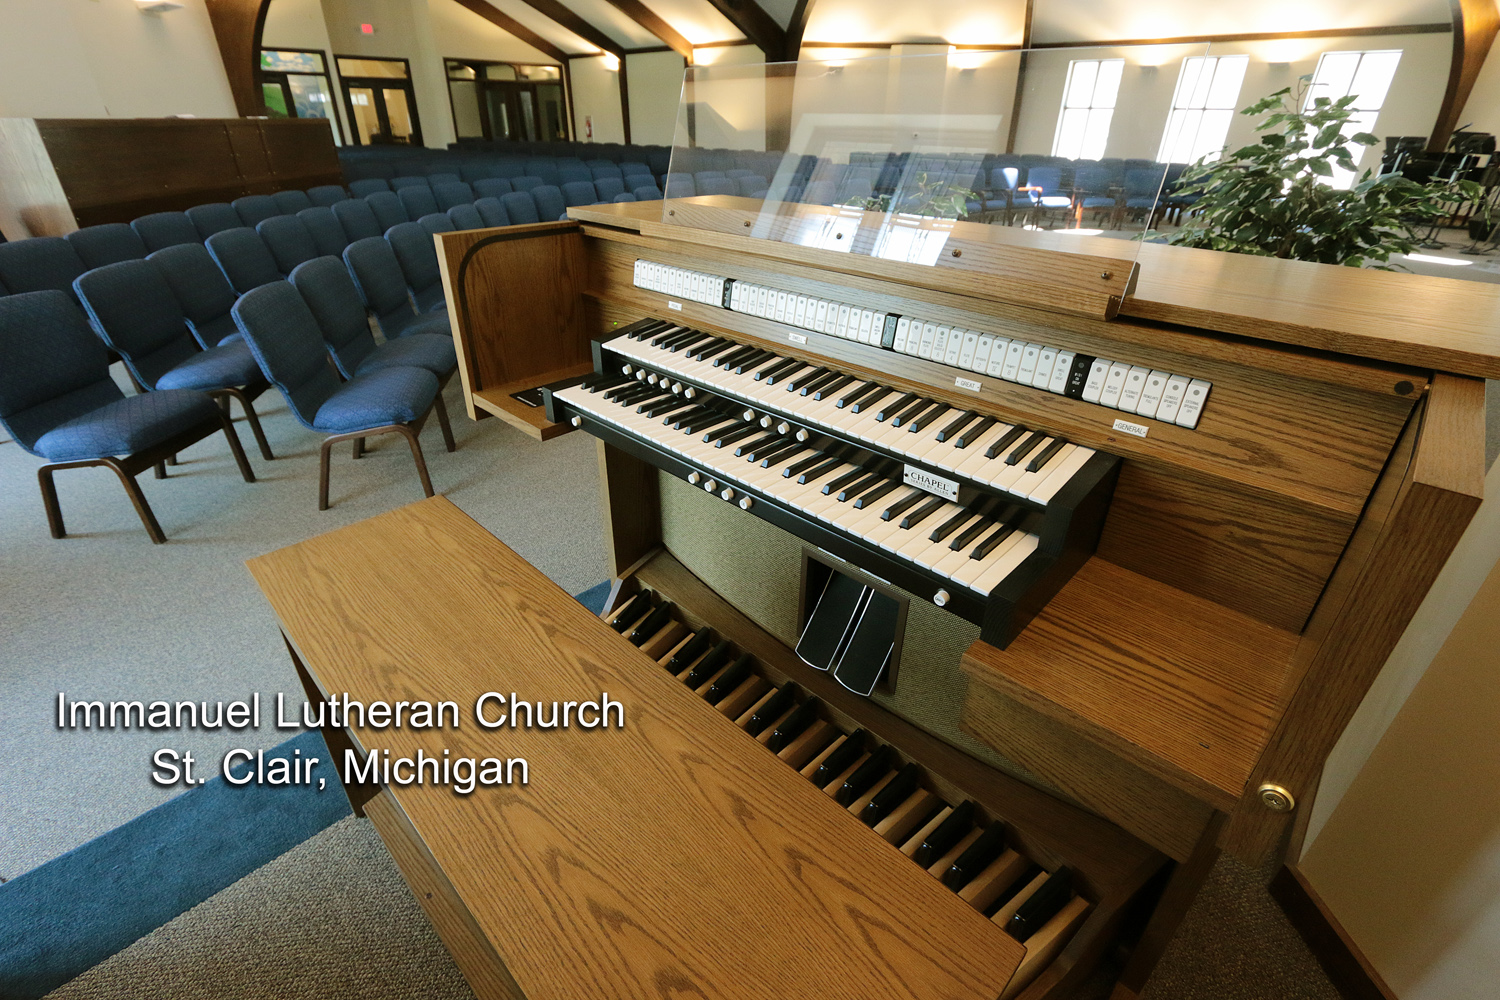 Immanuel Lutheran Church, Saint Clair, Michigan